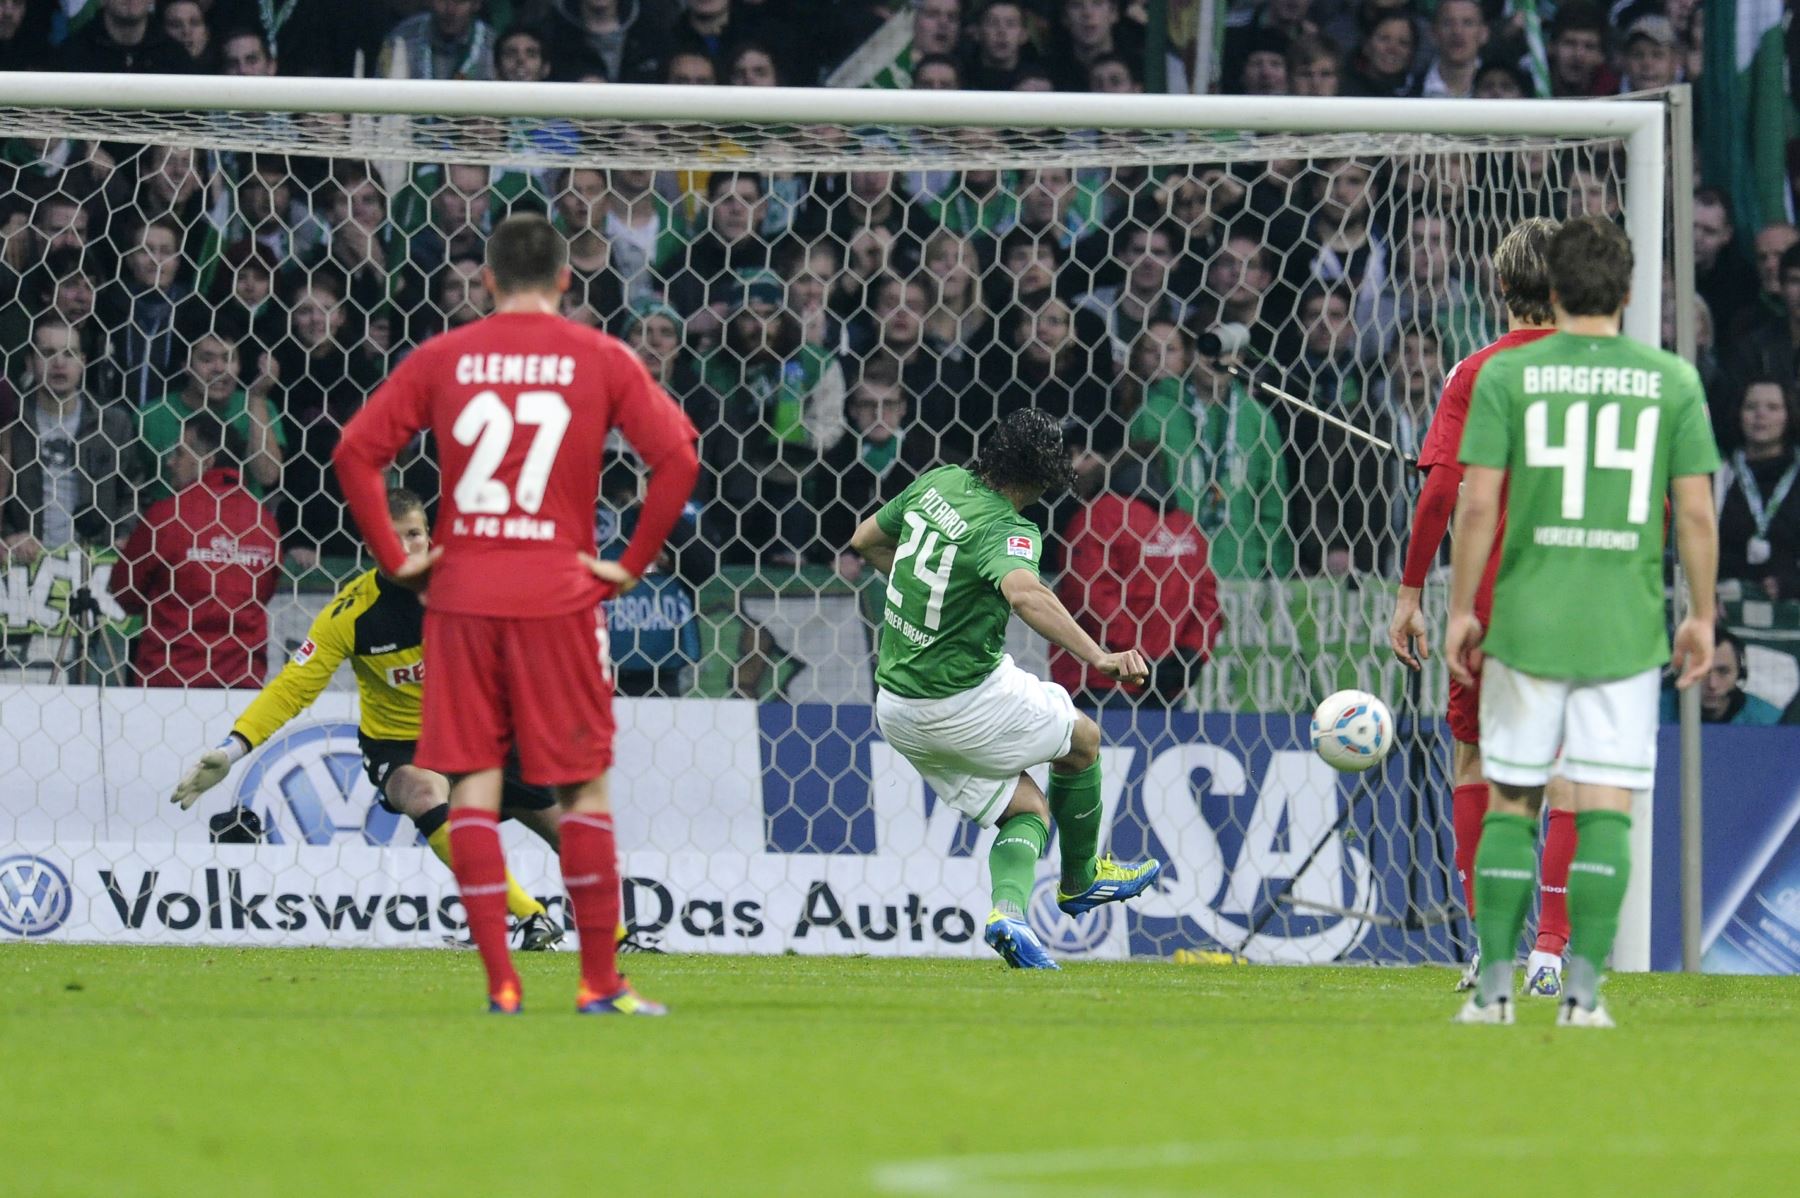 El delantero peruano de Werder Bremen, Claudio Pizarro (C), anotó un penal durante el partido de fútbol de la Bundesliga de la primera división alemana SV Werder Bremen contra 1. FC Colonia en la ciudad alemana de Bremen, el 5 de noviembre de 2011. Bremen ganó el partido 3-2.
Foto:AFP